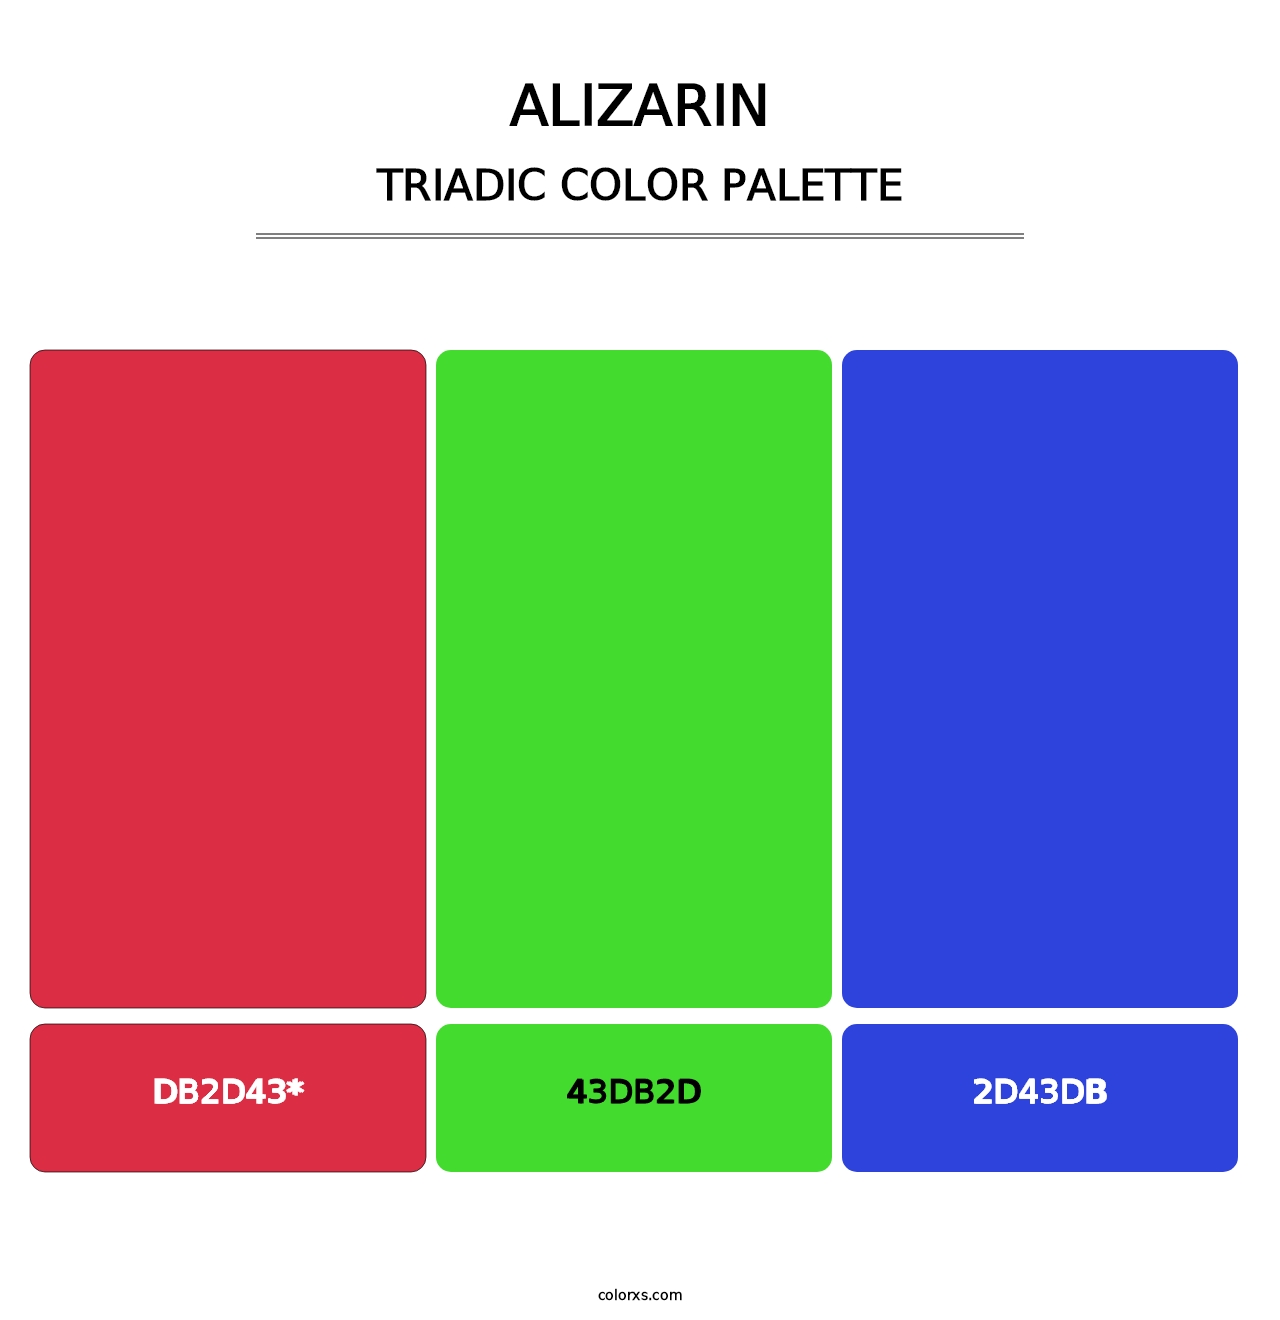 Alizarin - Triadic Color Palette